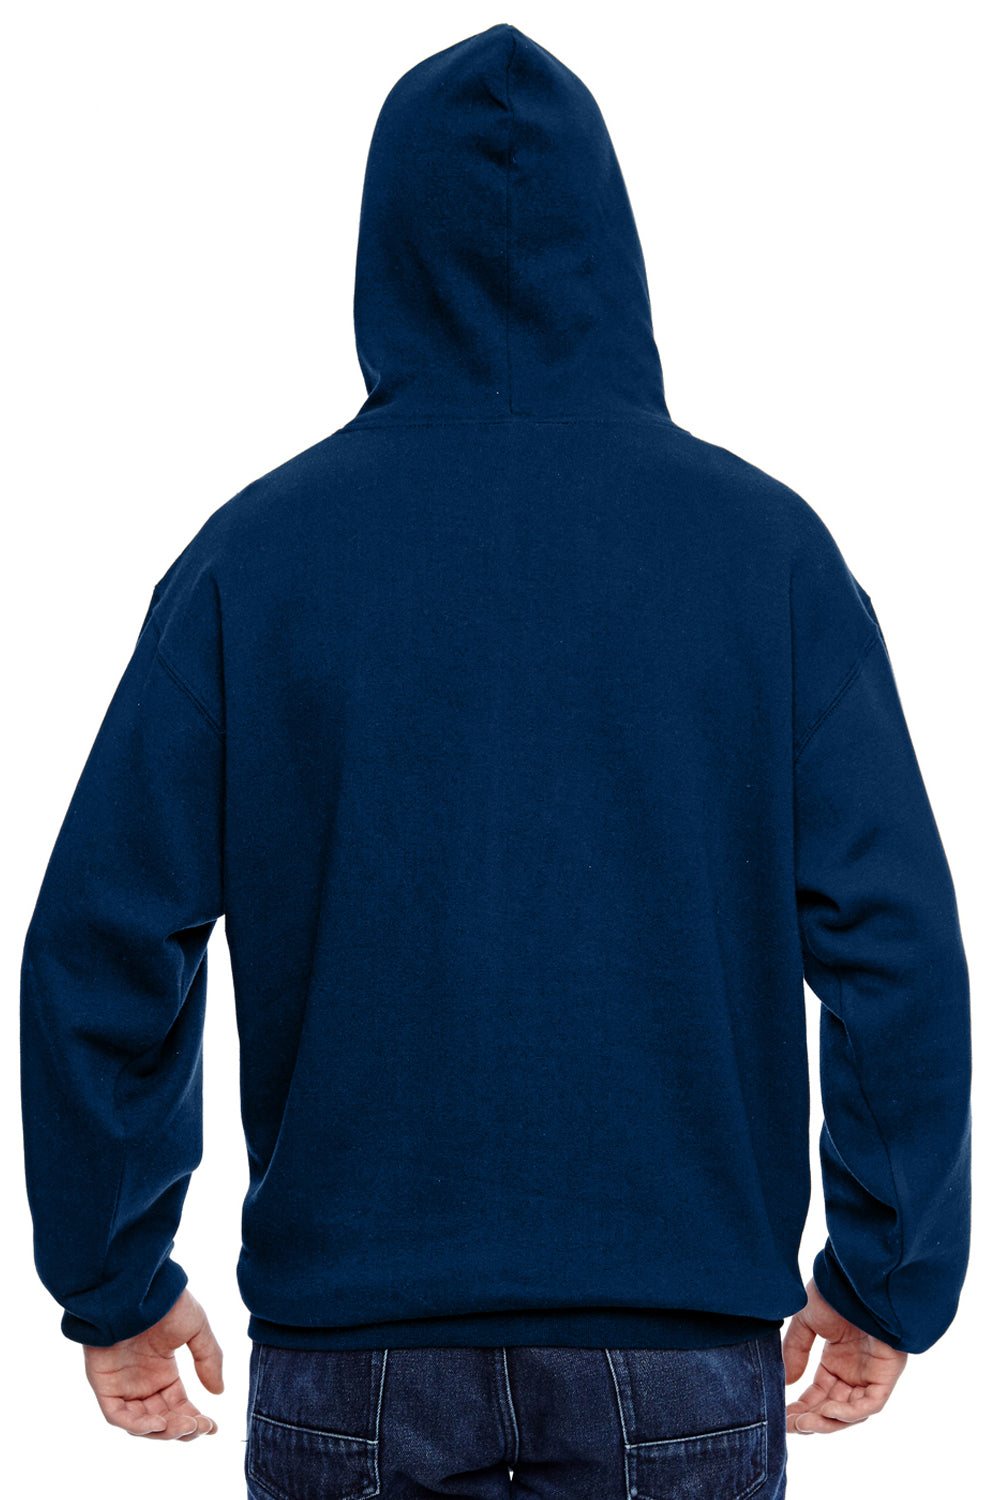 J America JA8815 Mens Tailgate Fleece Hooded Sweatshirt Hoodie Navy Blue Back